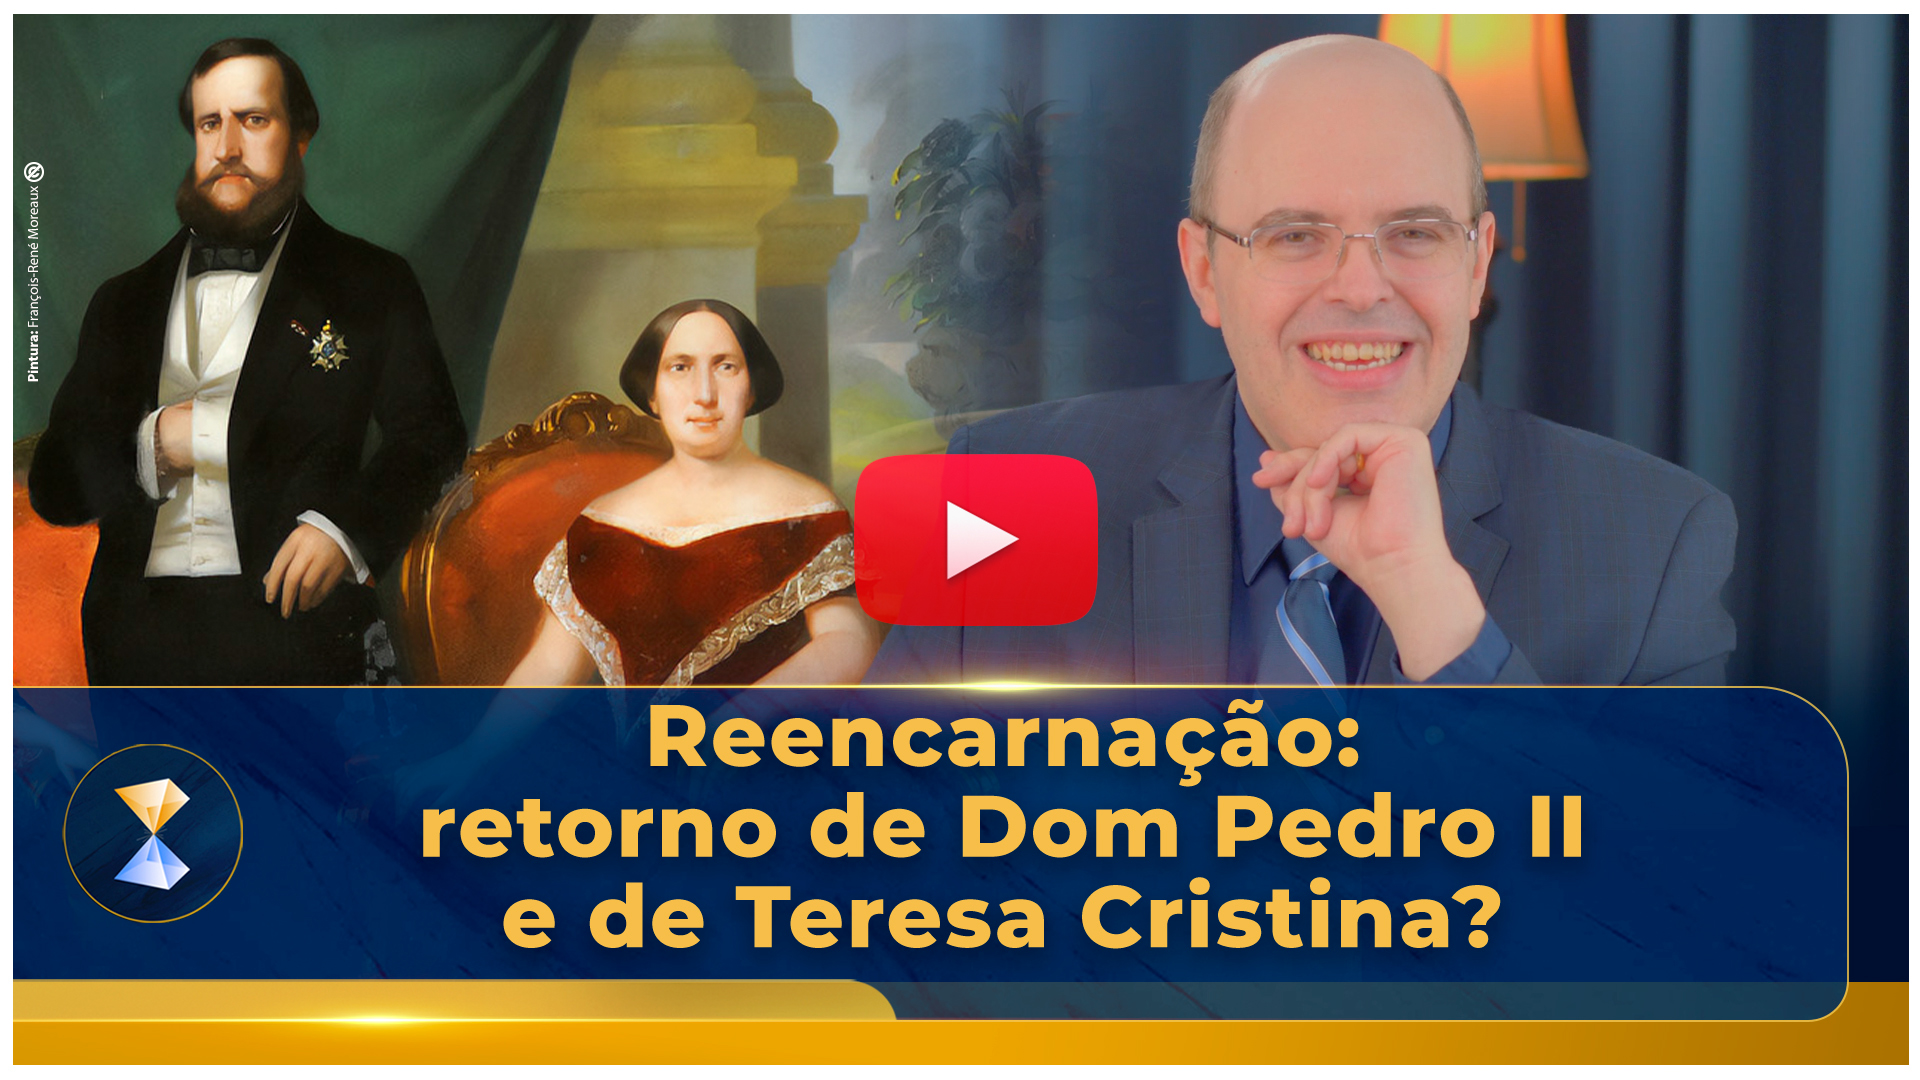 Reencarnação: retorno de Dom Pedro II e de Teresa Cristina?